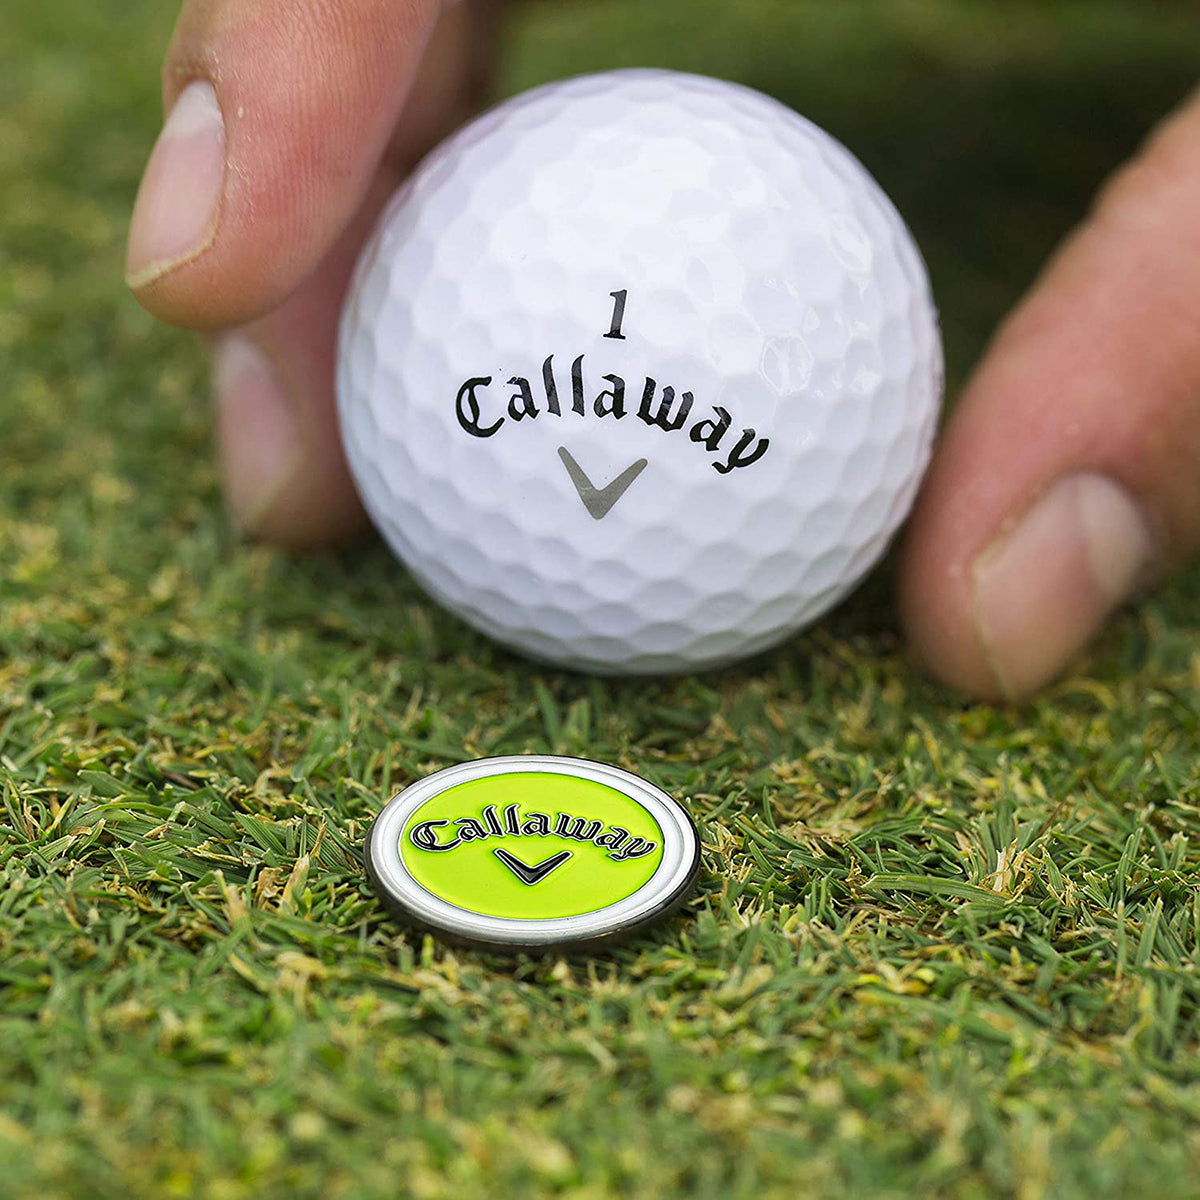 Callaway Golf 4-in-1 Divot Repair Tool Izzo